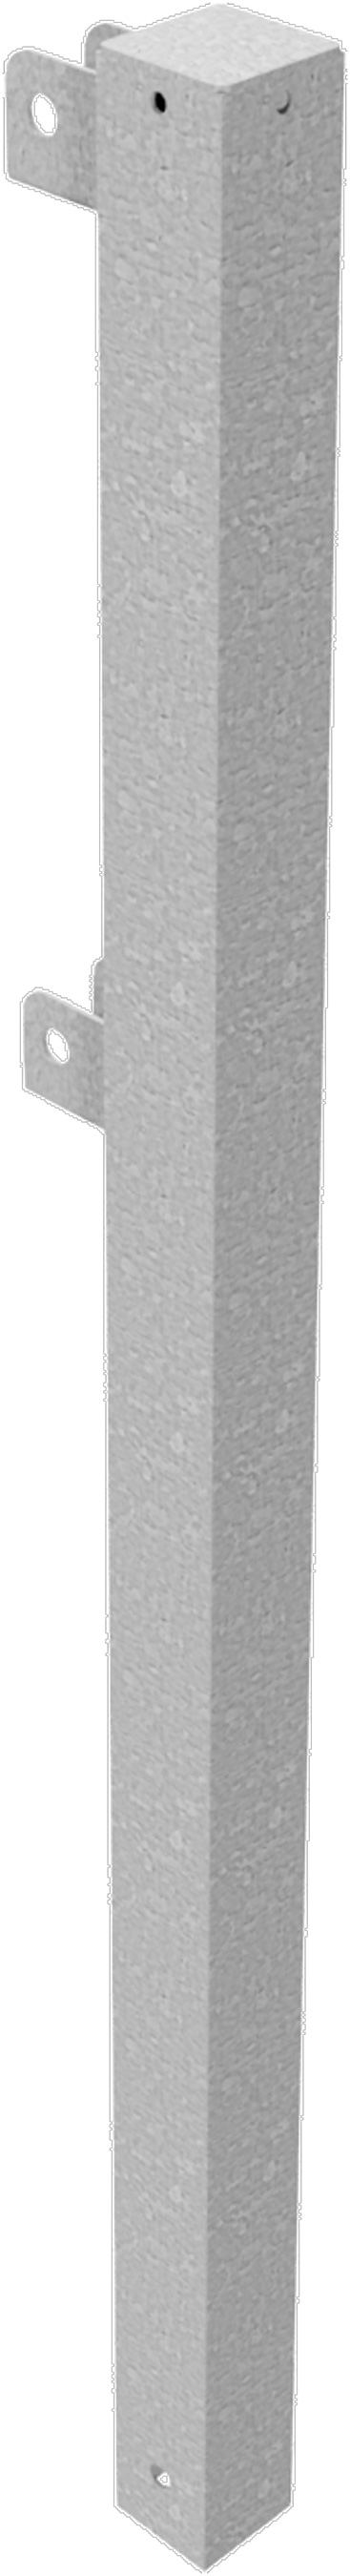 Schake Schutzgeländer Stahl Endpfosten OE 70 x 70 mm verzinkt